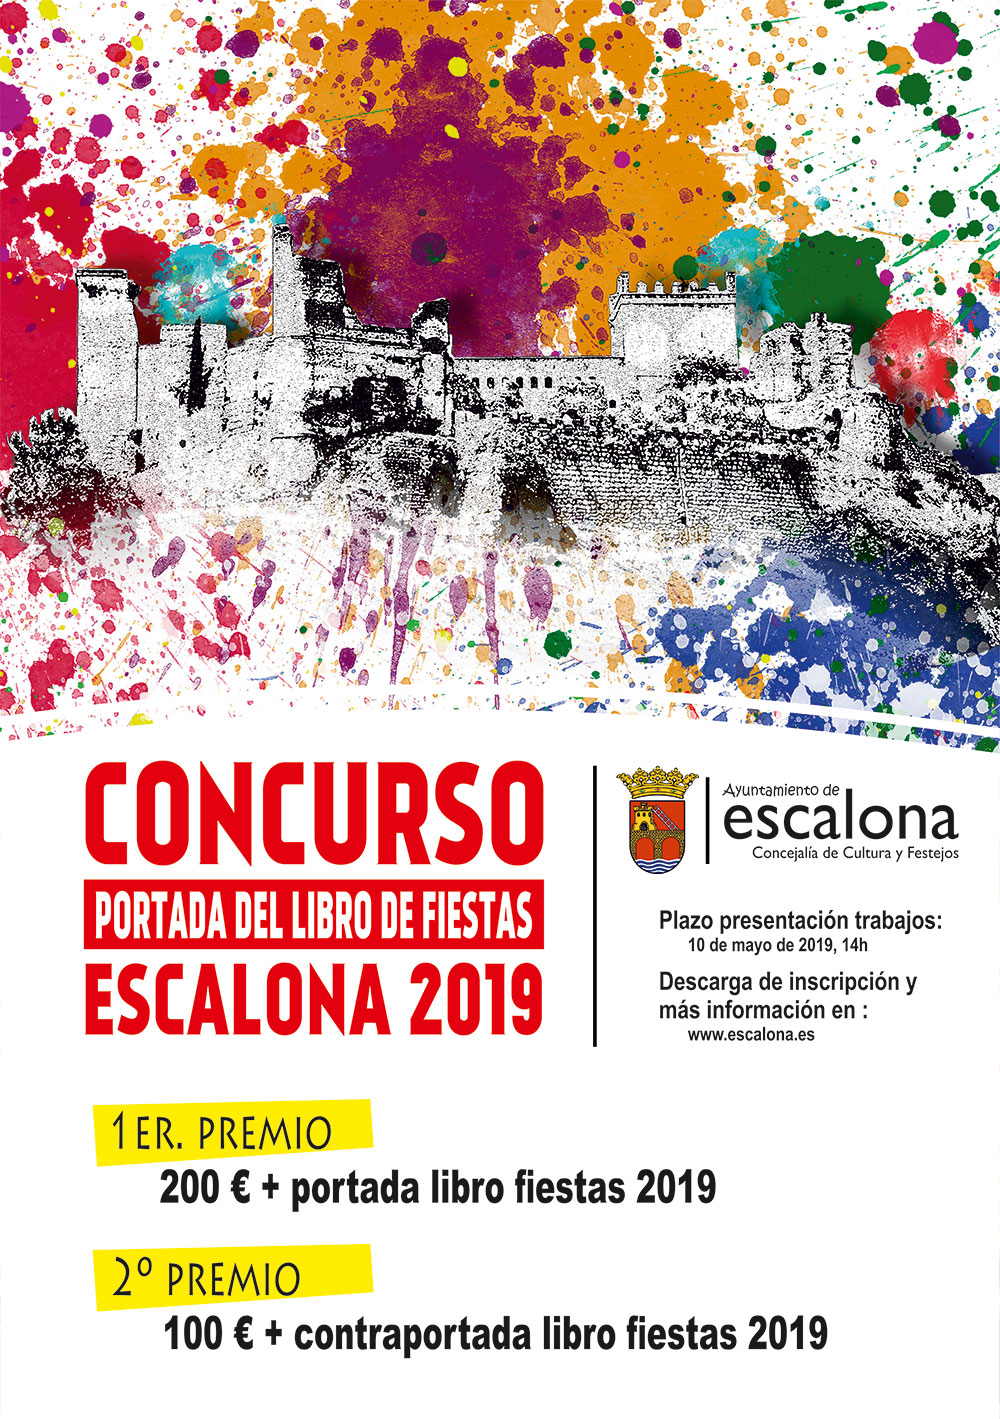 Concurso portada del libro de fiestas 2019 - Ayuntamiento de Escalona